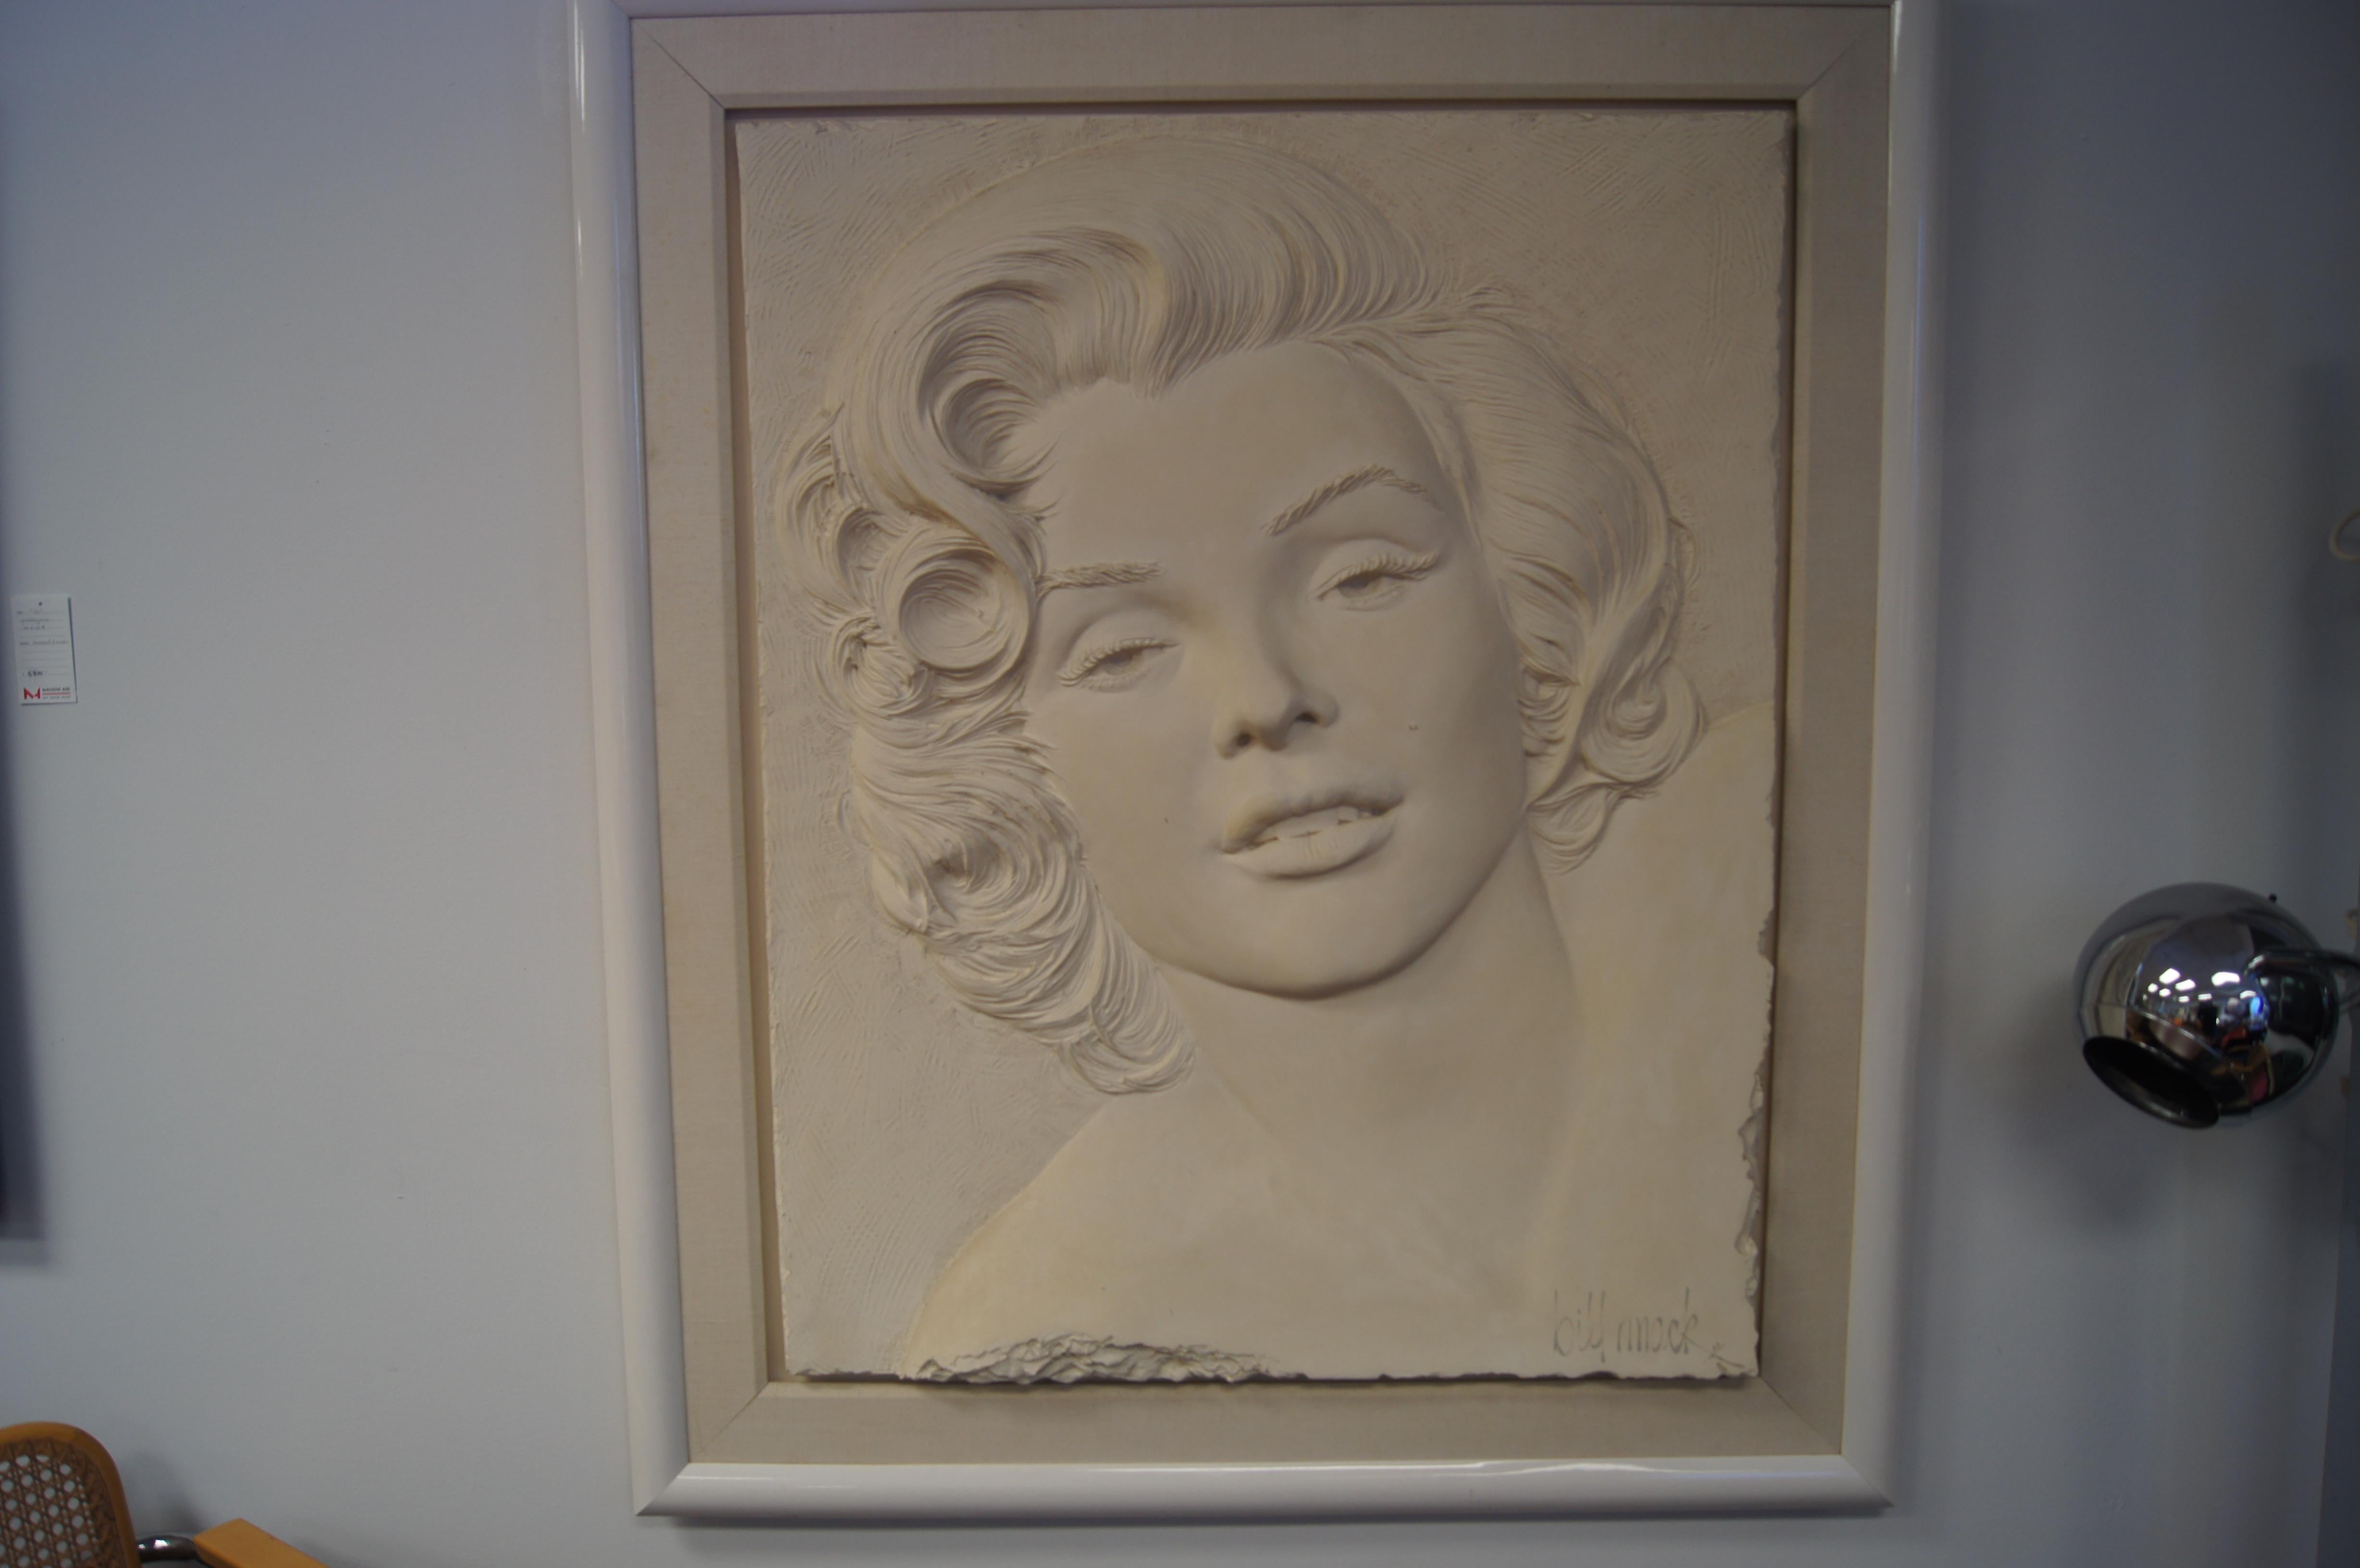 Créé par Bill Mack en 1984, ce grand bas-relief encadré de Marilyn Monroe est un bel exemple de la technique de sculpture la plus connue de l'artiste, qui utilise du sable lié à la résine. Il plairait à tout collectionneur d'art figuratif Monroe.